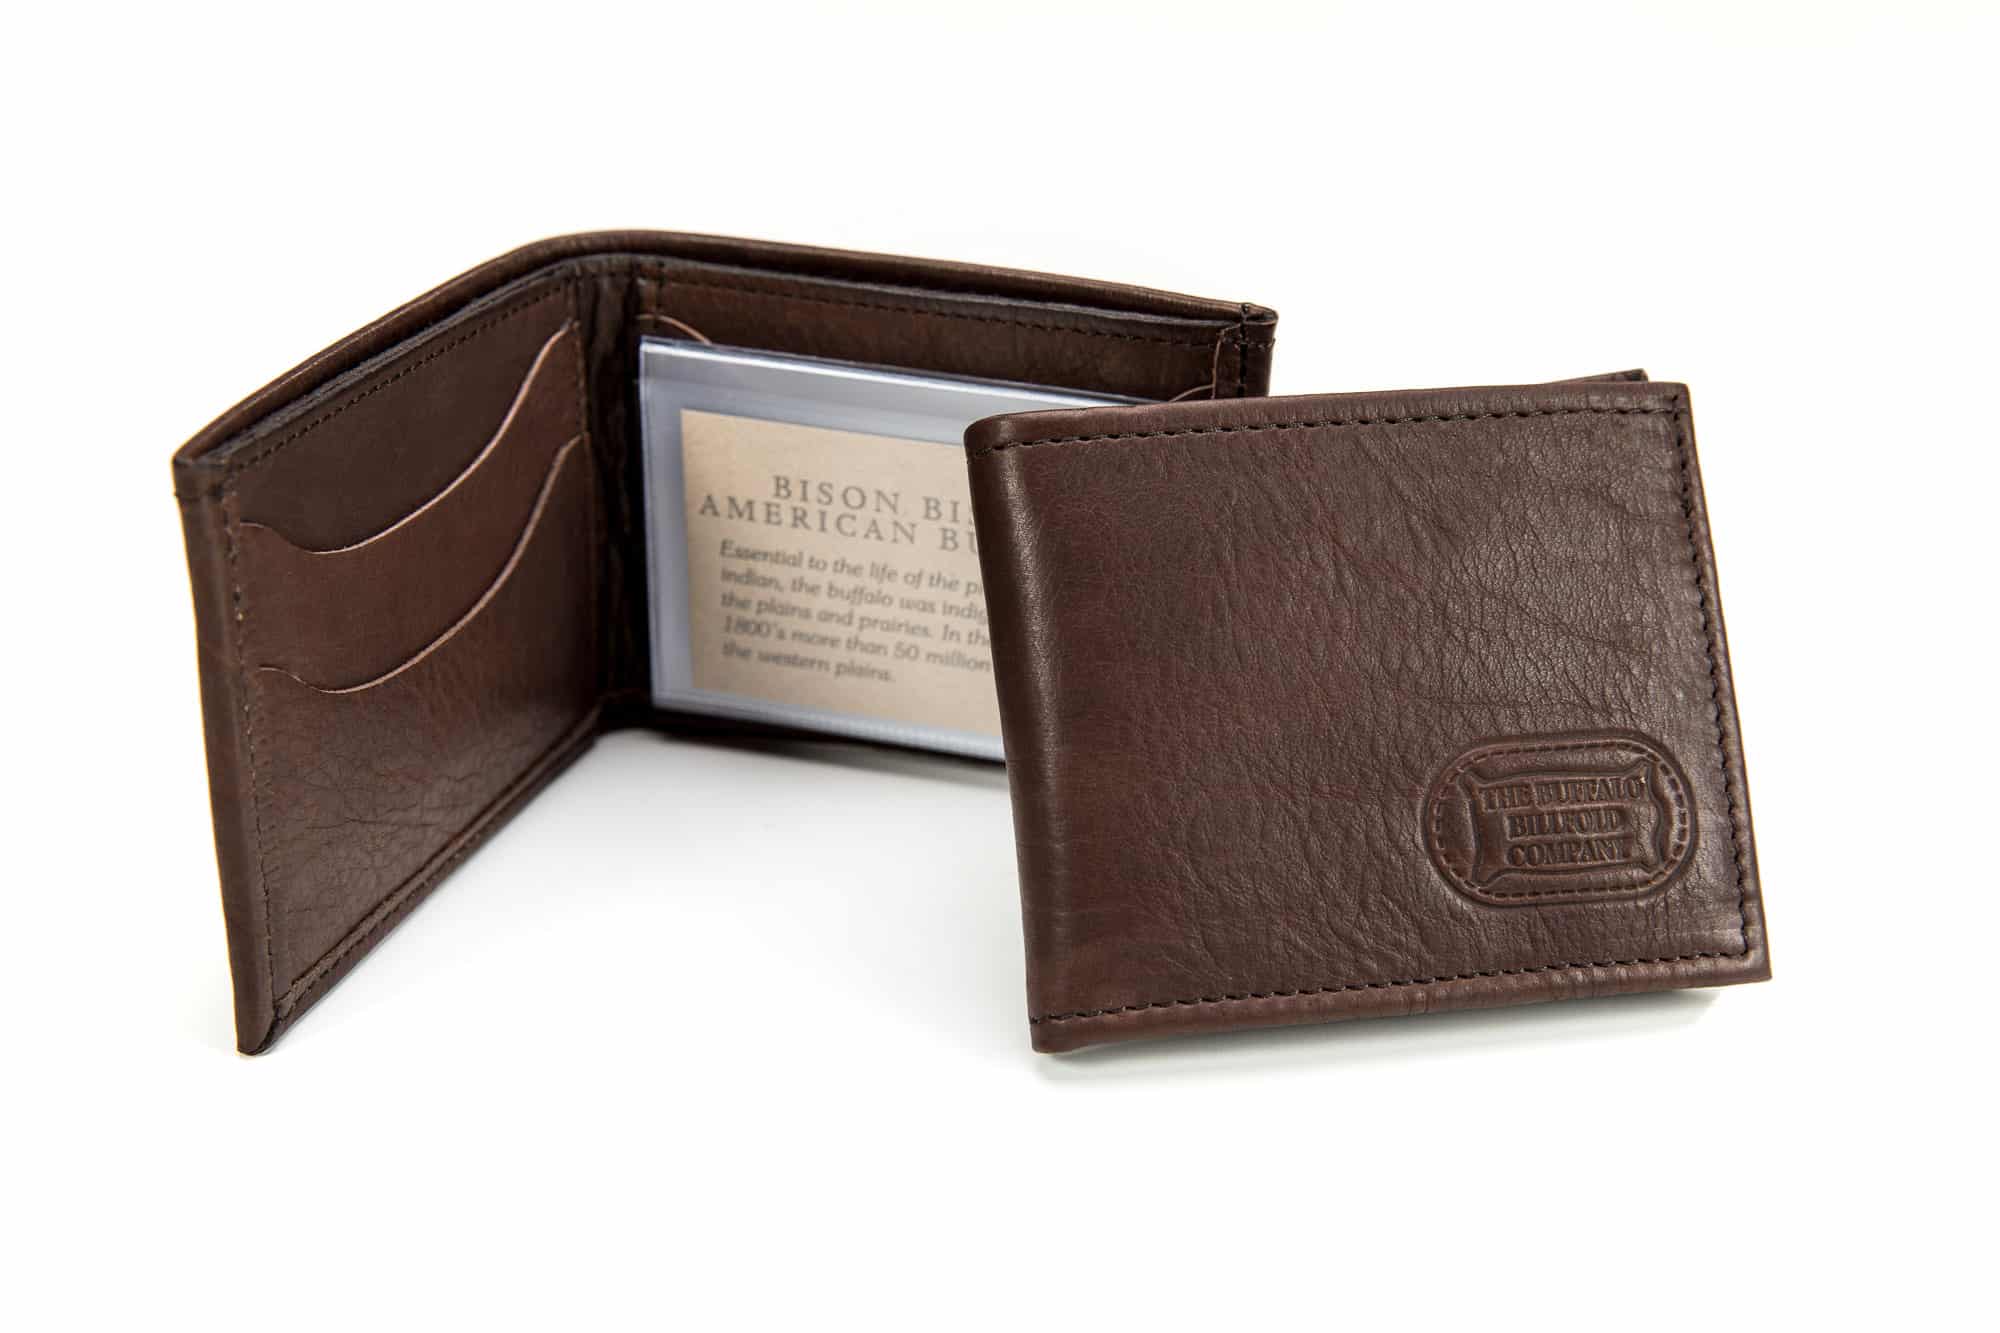 Maker & Sons DIY Leather Wallet Kit